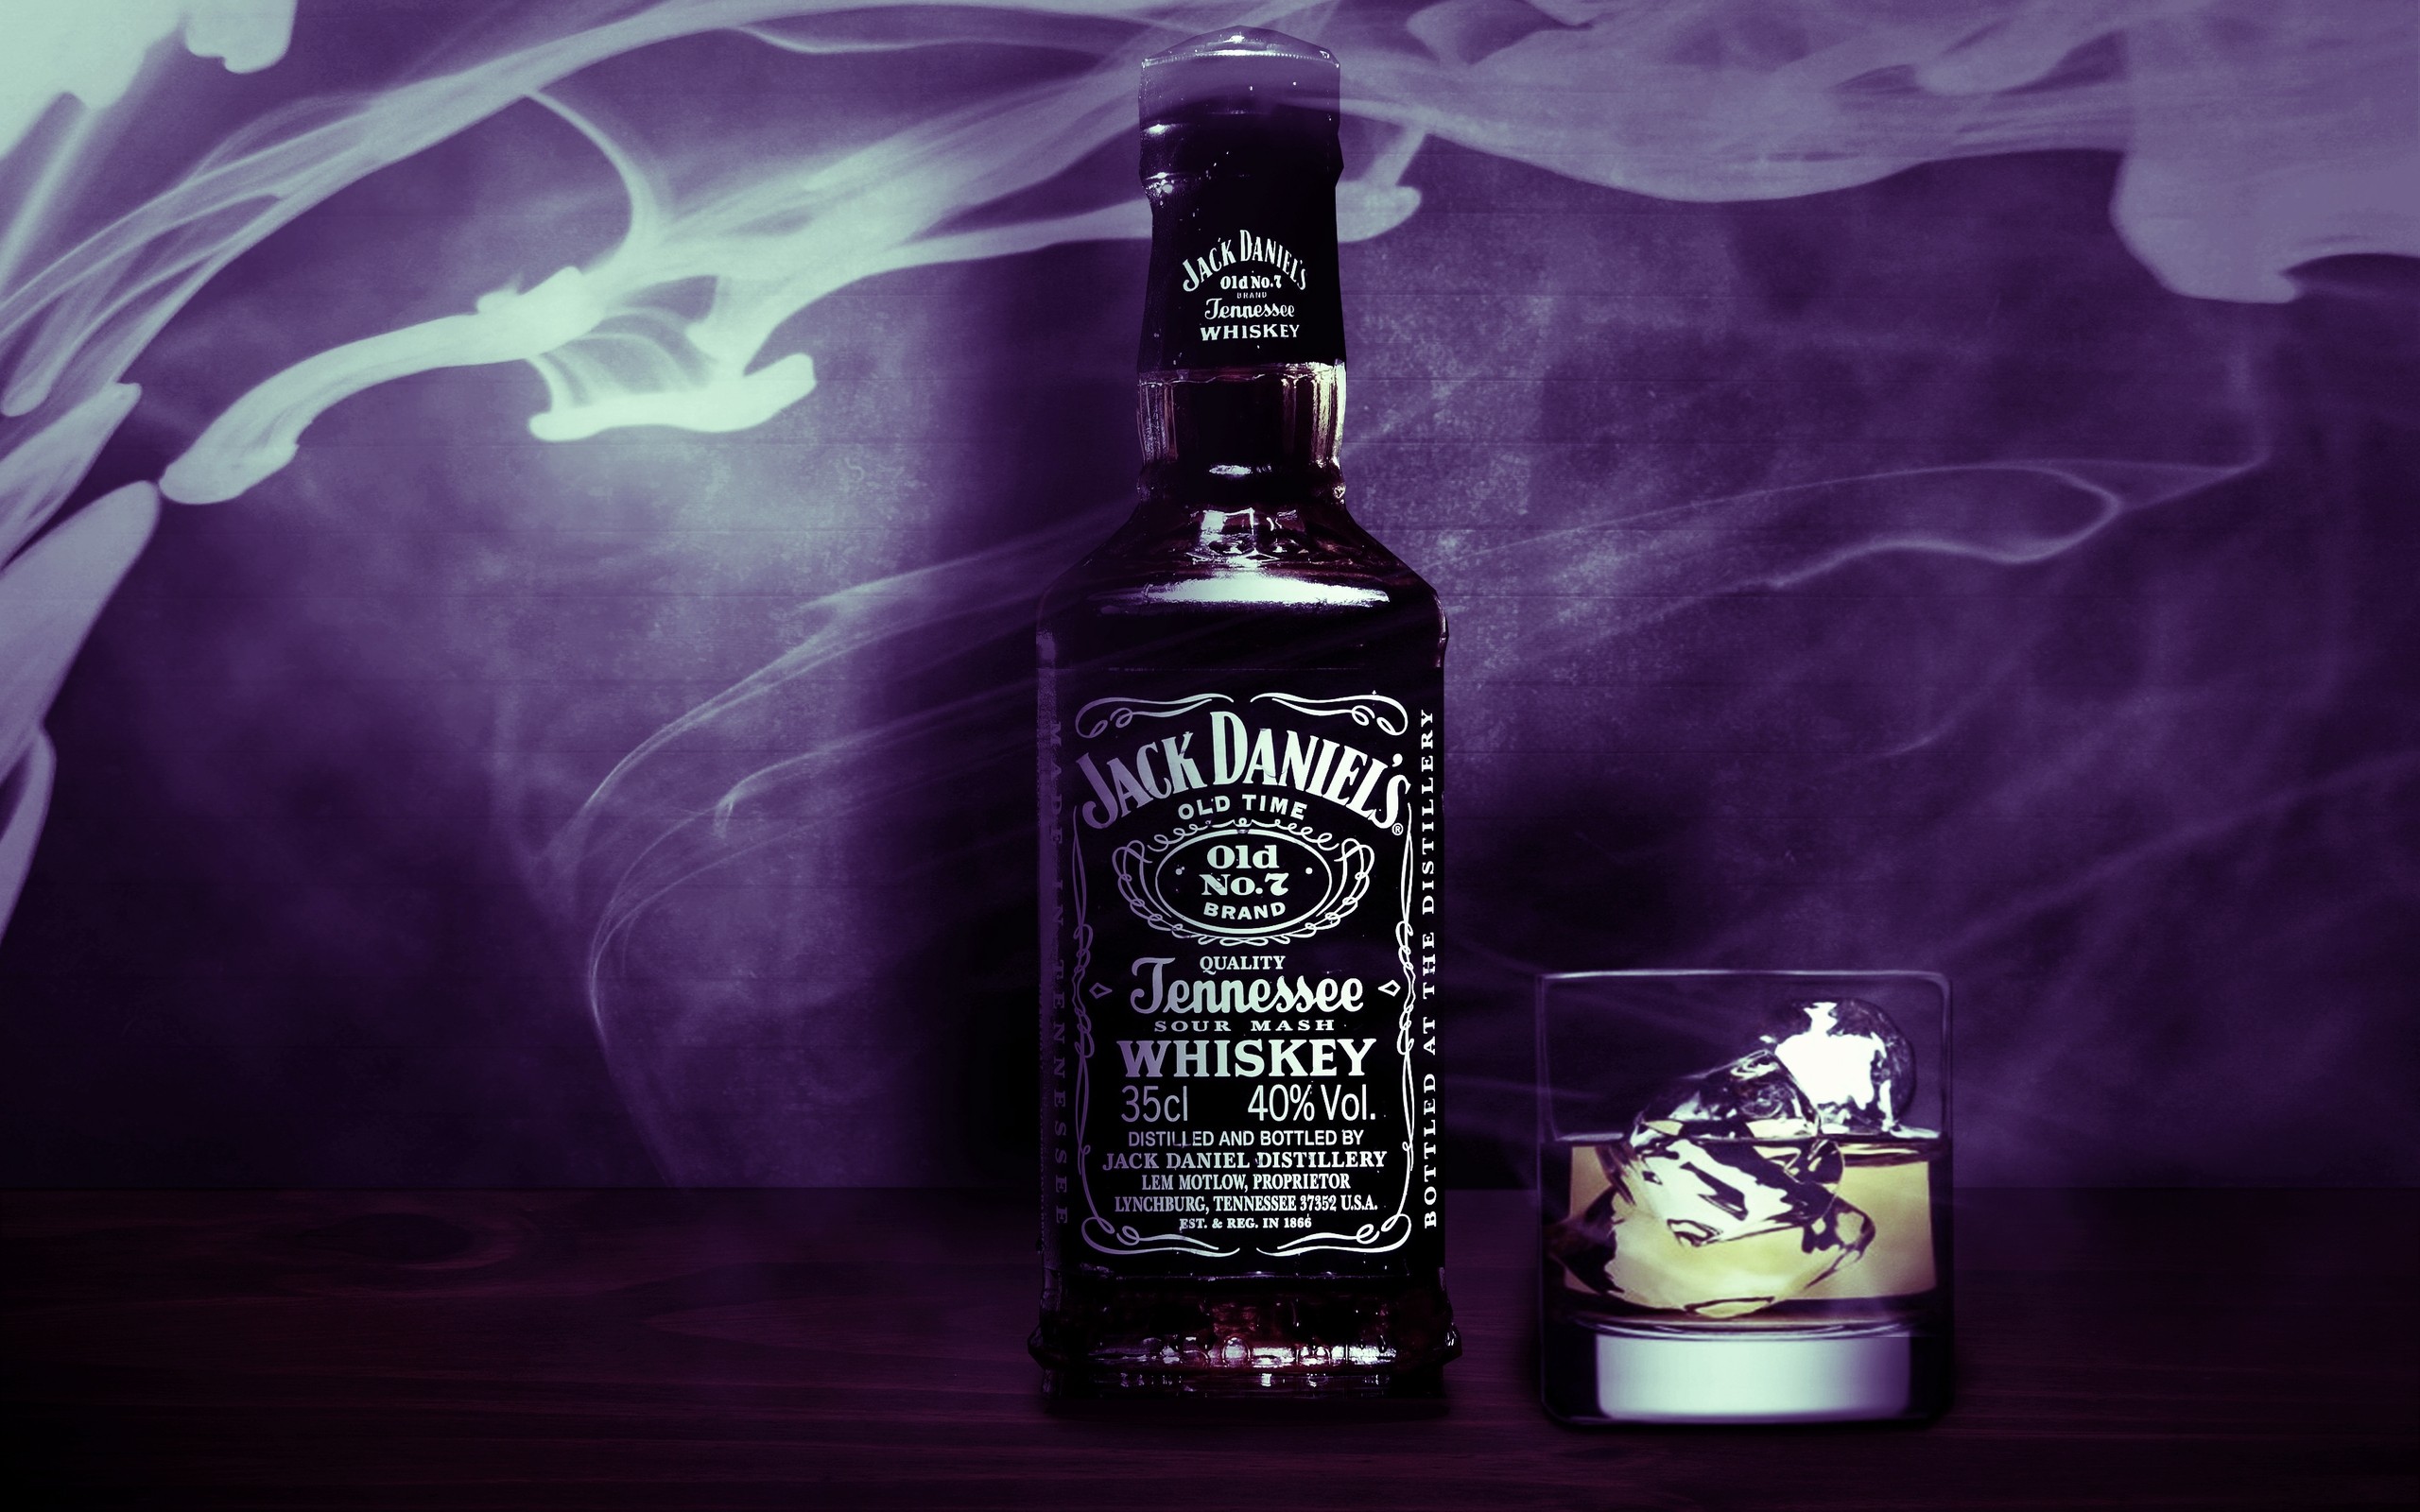 Image About Jack Daniels Please